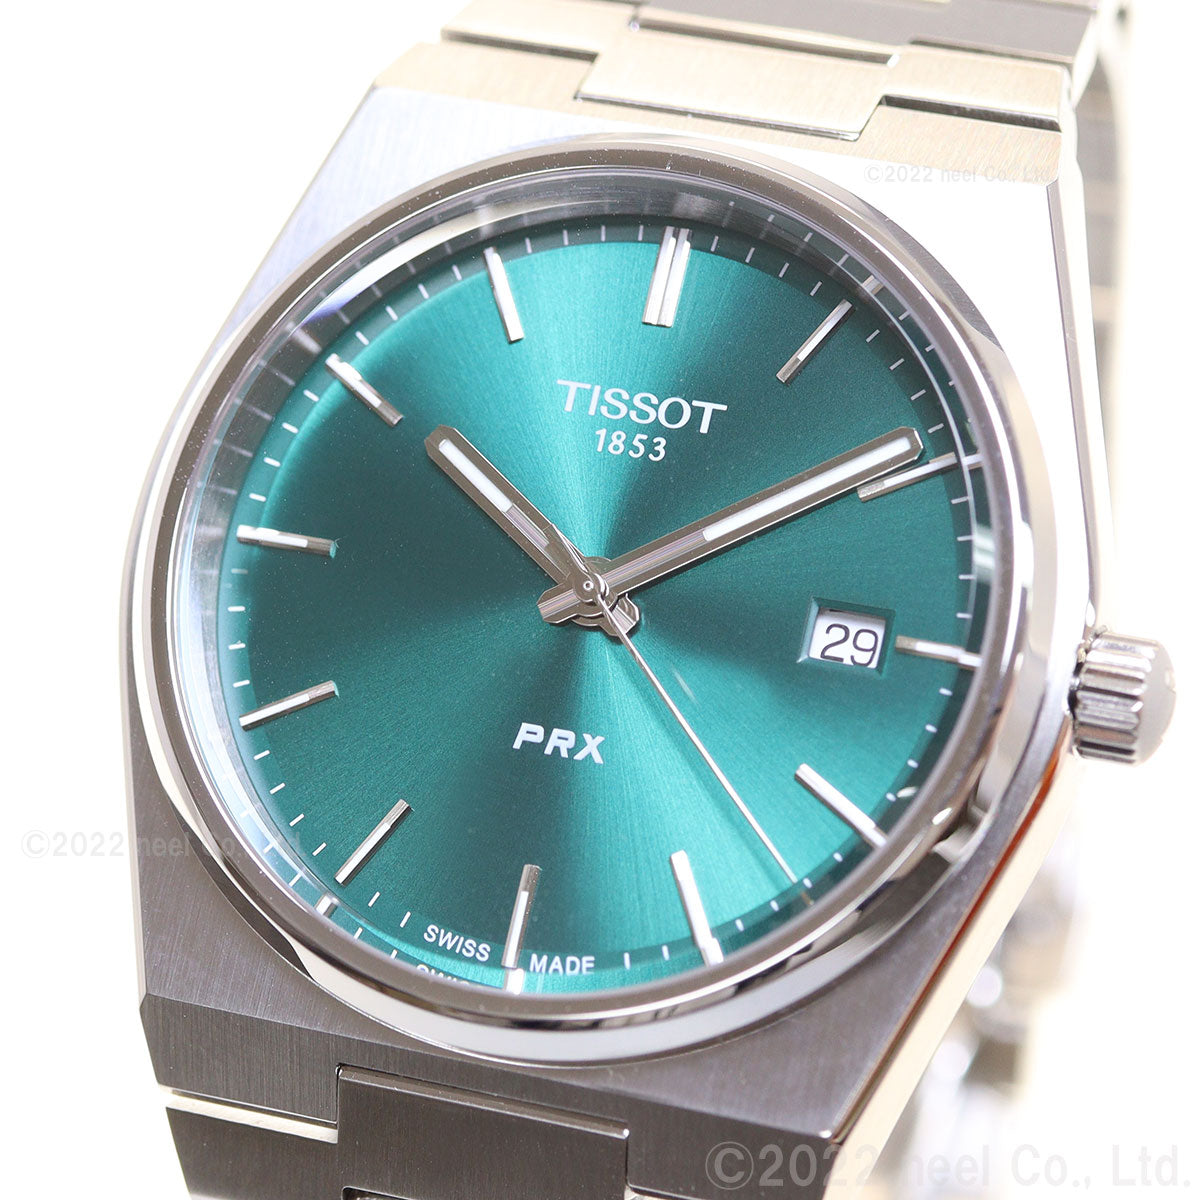 ティソ TISSOT 腕時計 メンズ PRX ピーアールエックス T137.410.11.091.00